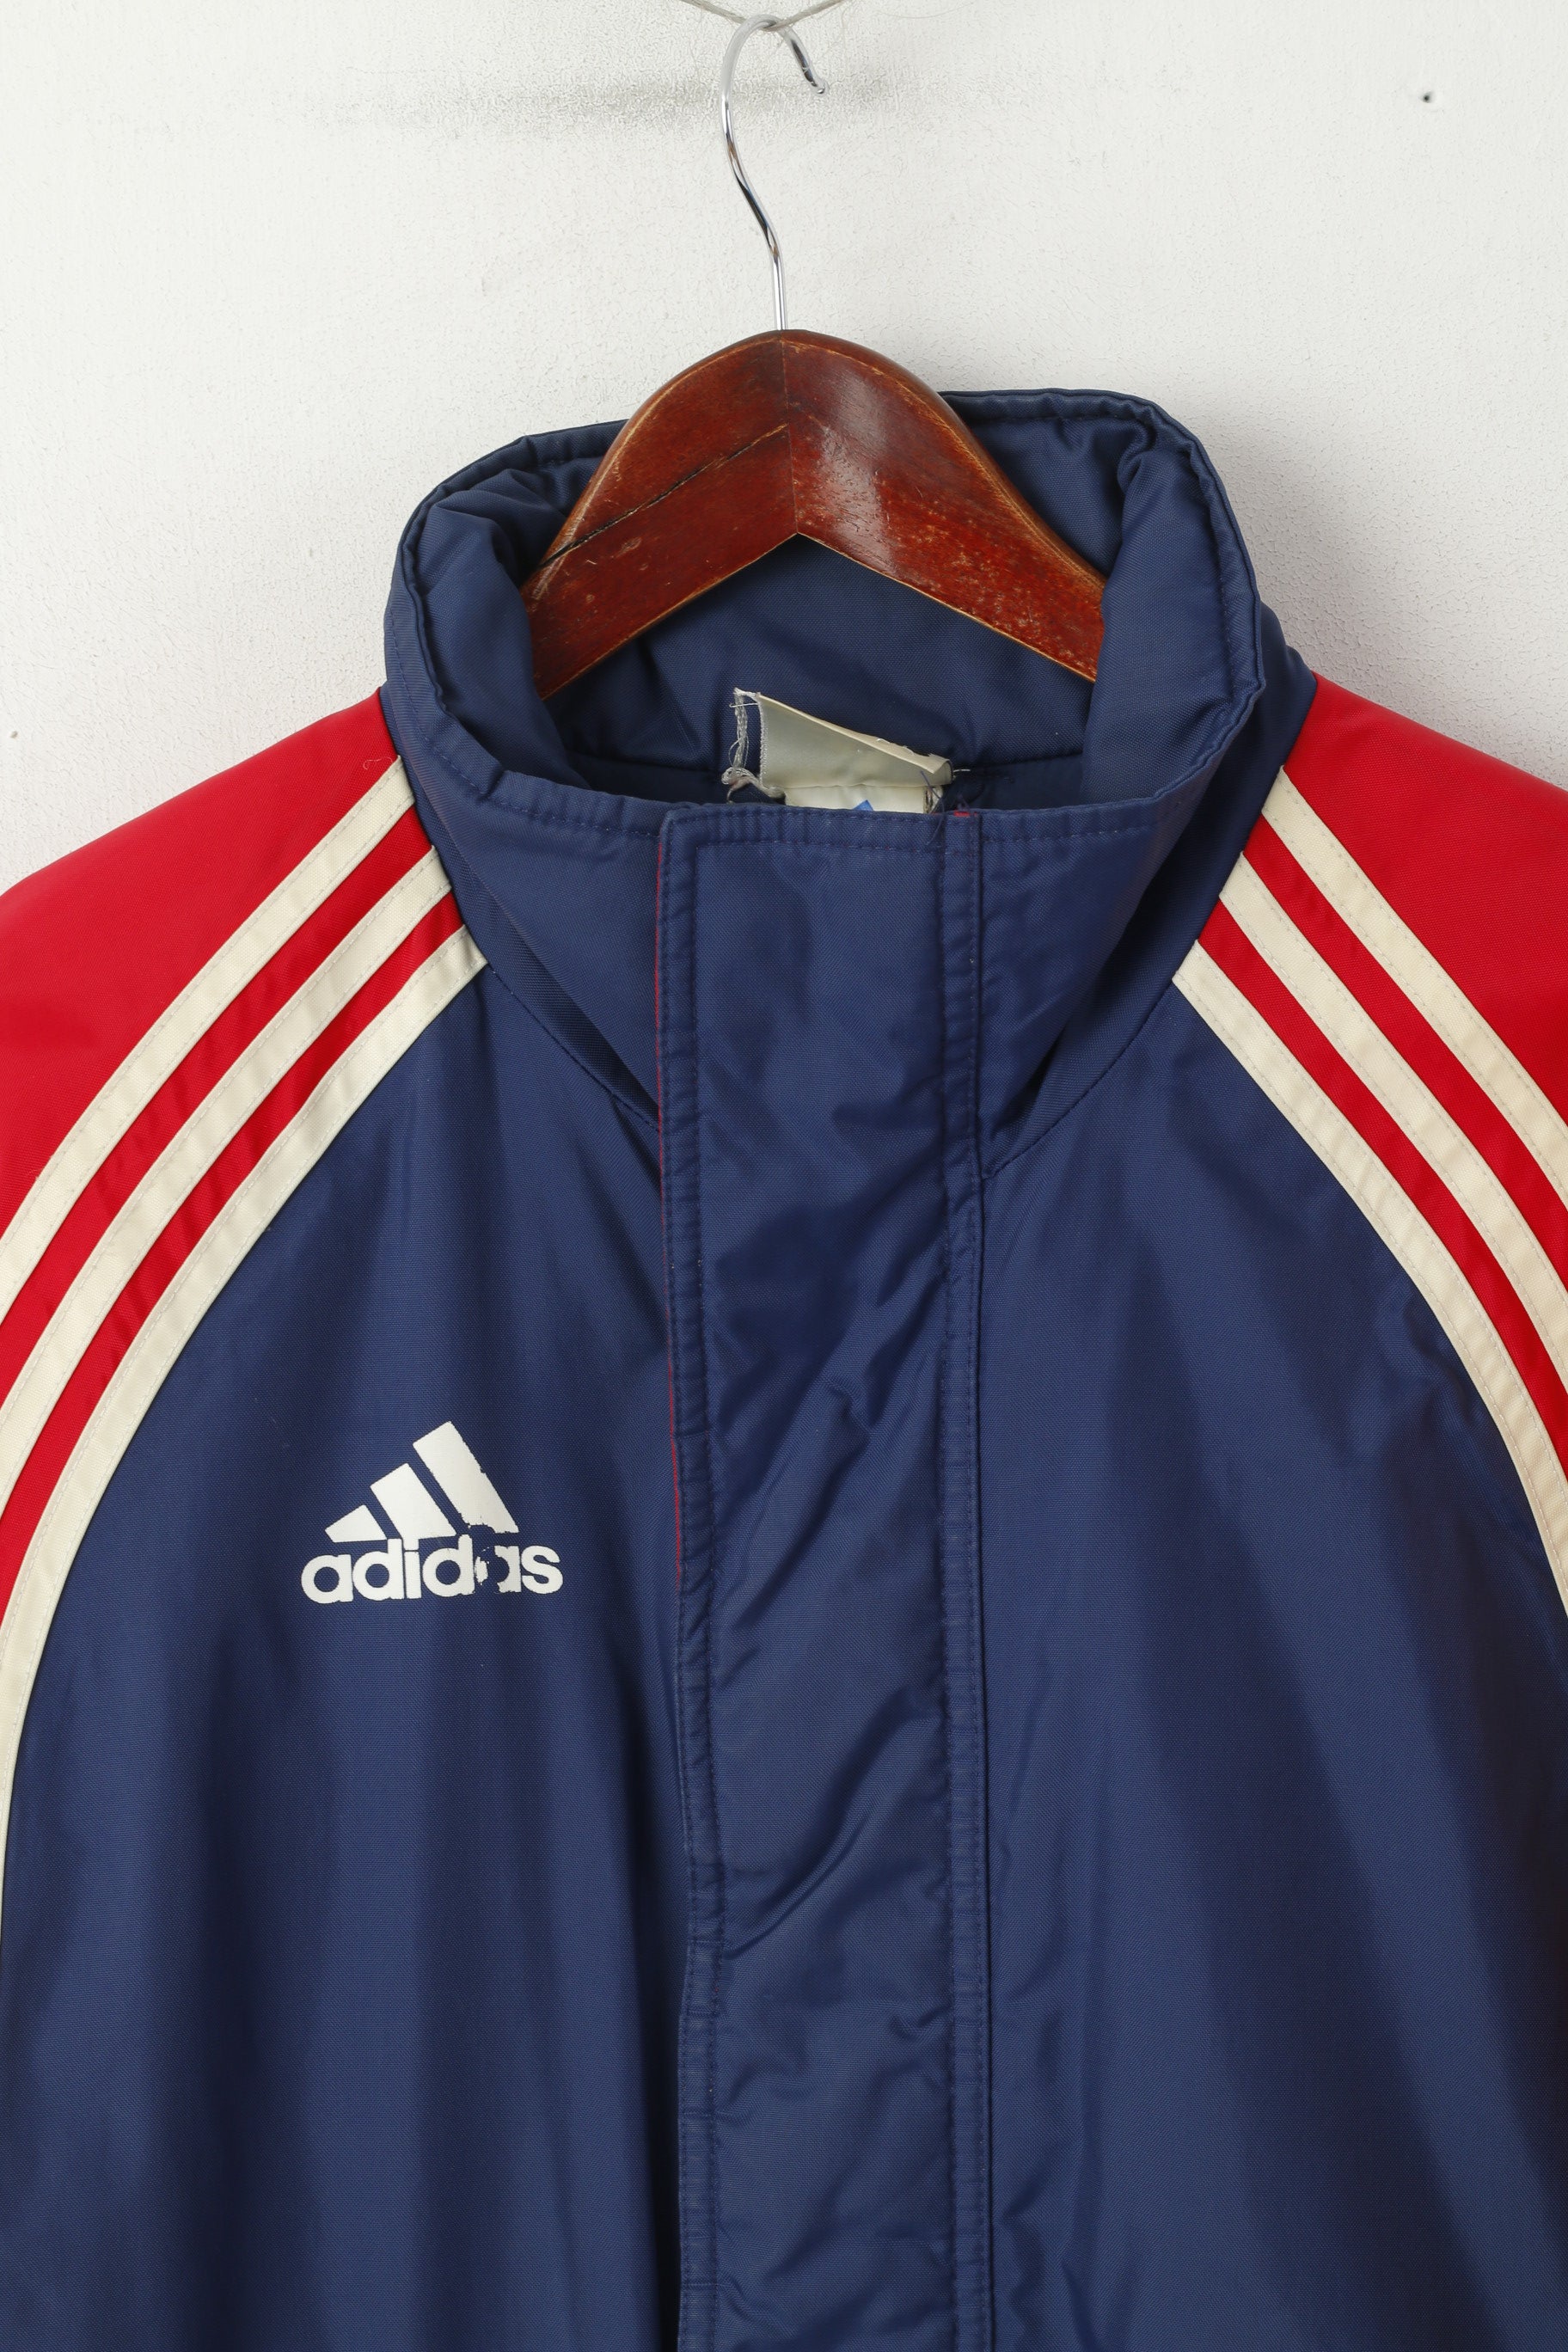 Adidas Men S 168 Jacket Vintage Blue Red Padded Nylon Waterproof